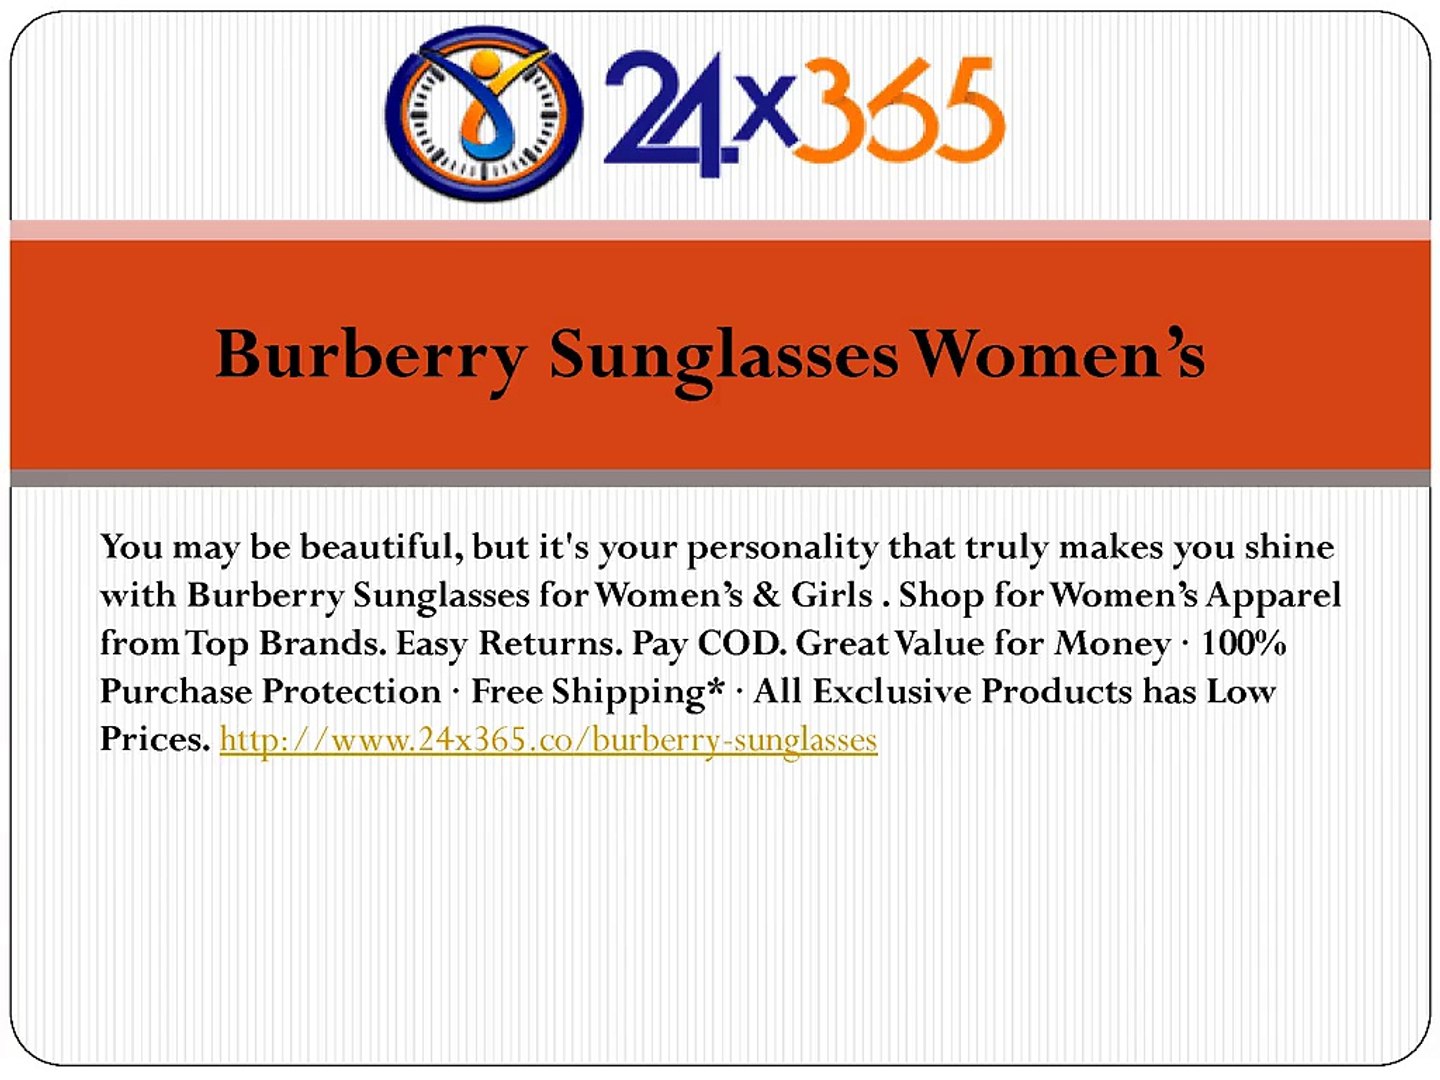 Burberry Sunglasses Womens